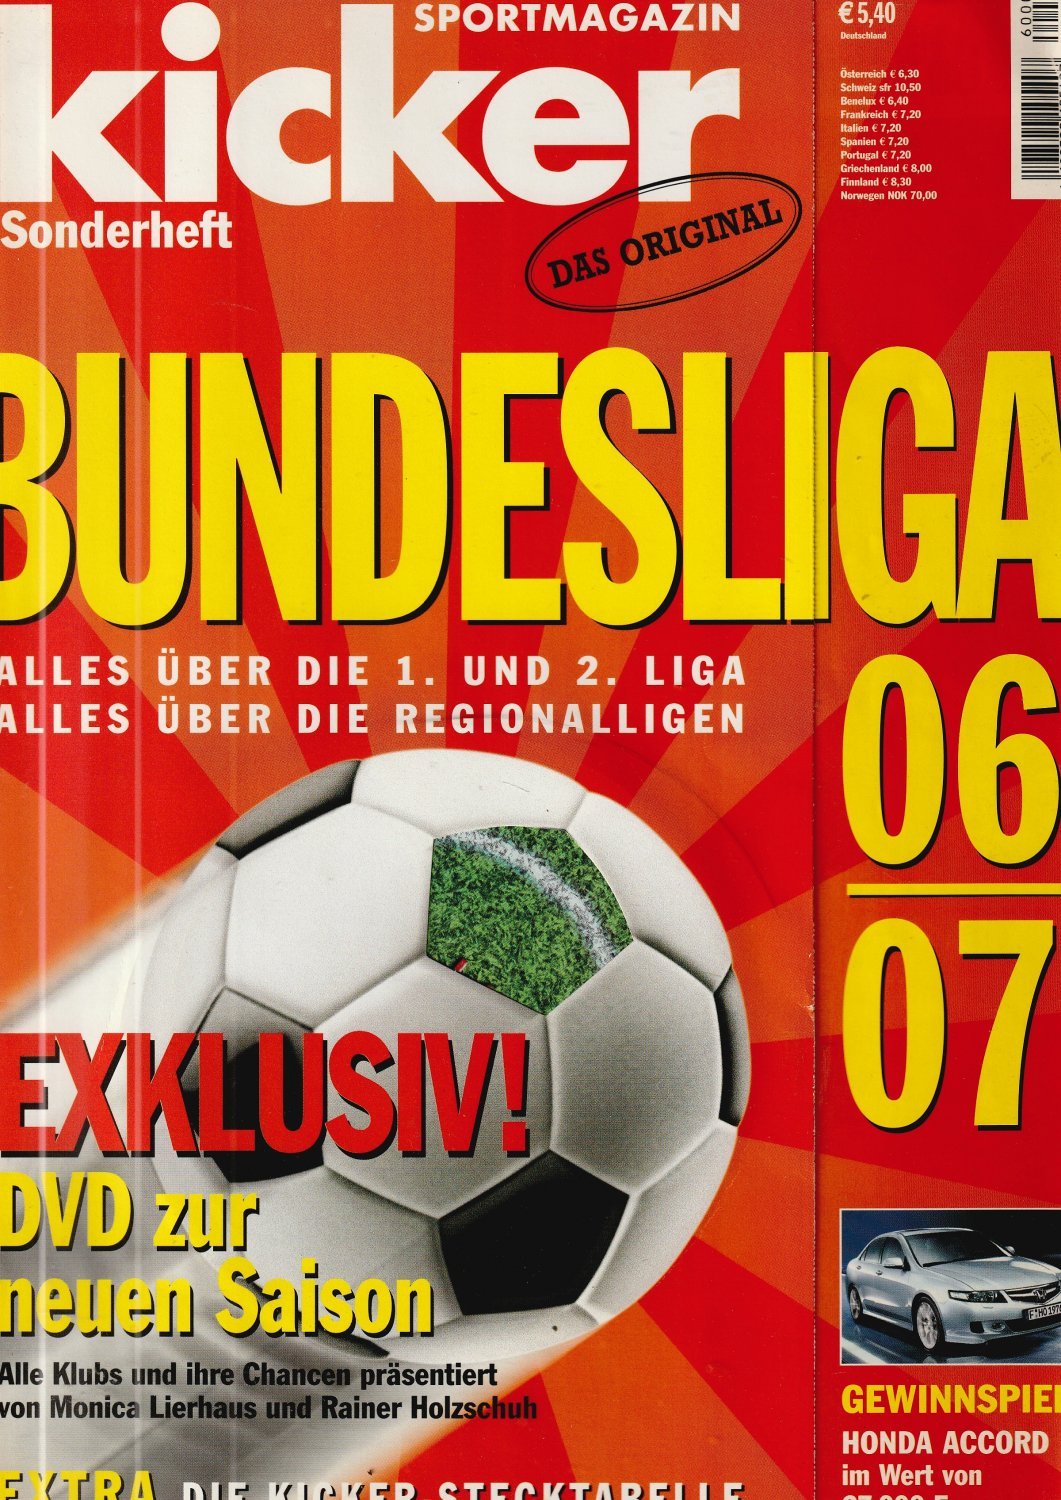 Kicker Sonderheft Bundesliga 06/07.“ – Buch gebraucht kaufen